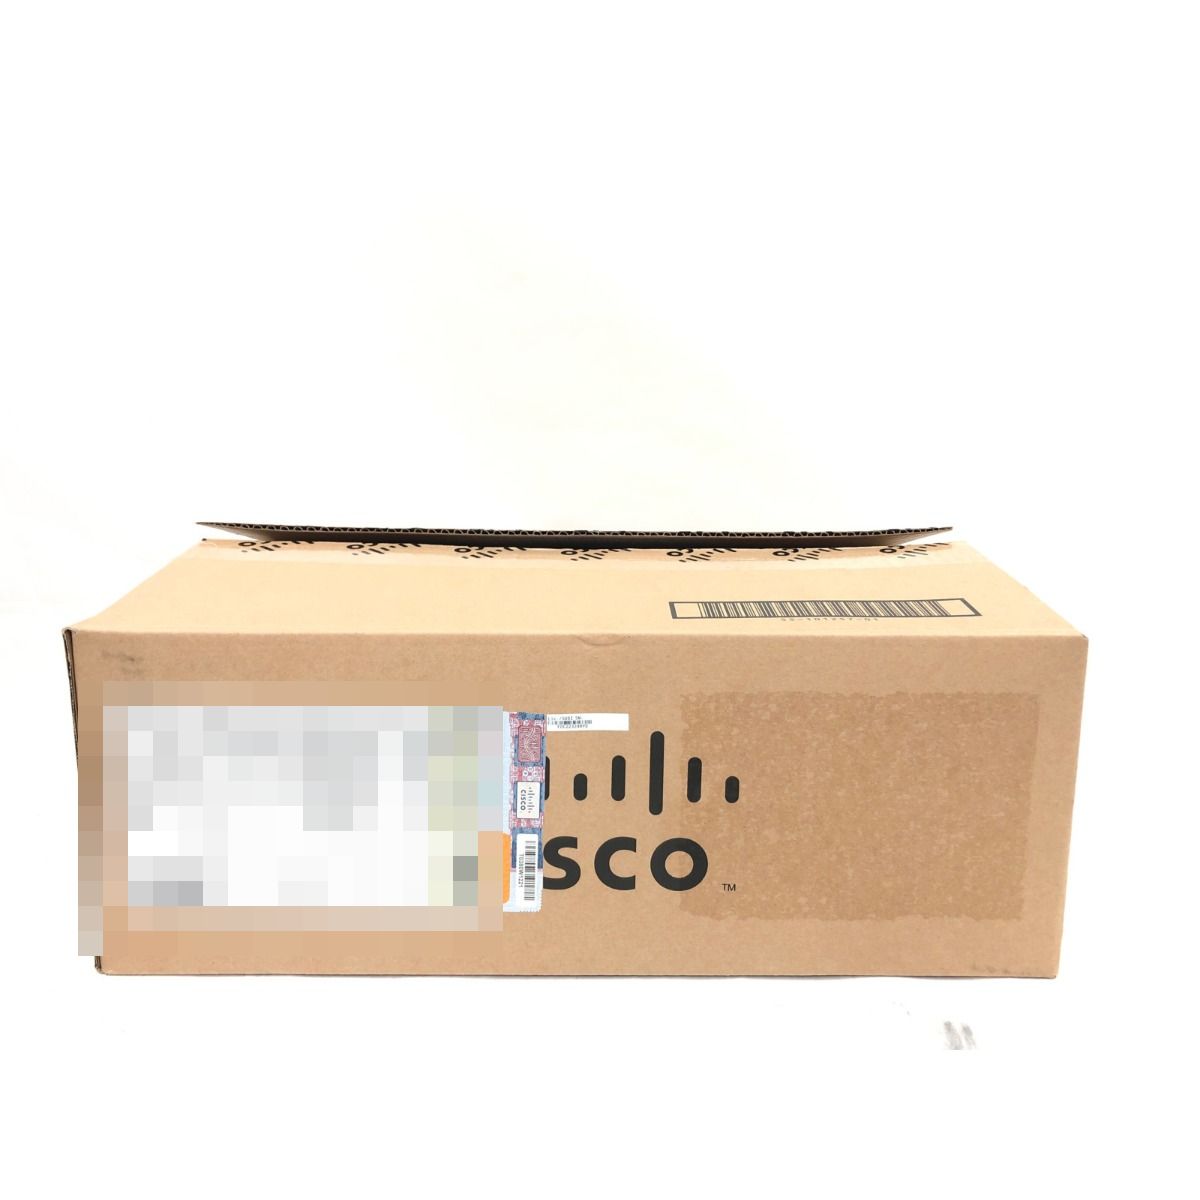 ▼▼【中古】Cisco シスコ サービス統合型ルーター 800Mシリーズ C841M-4X-JSEC/K9 Sランク